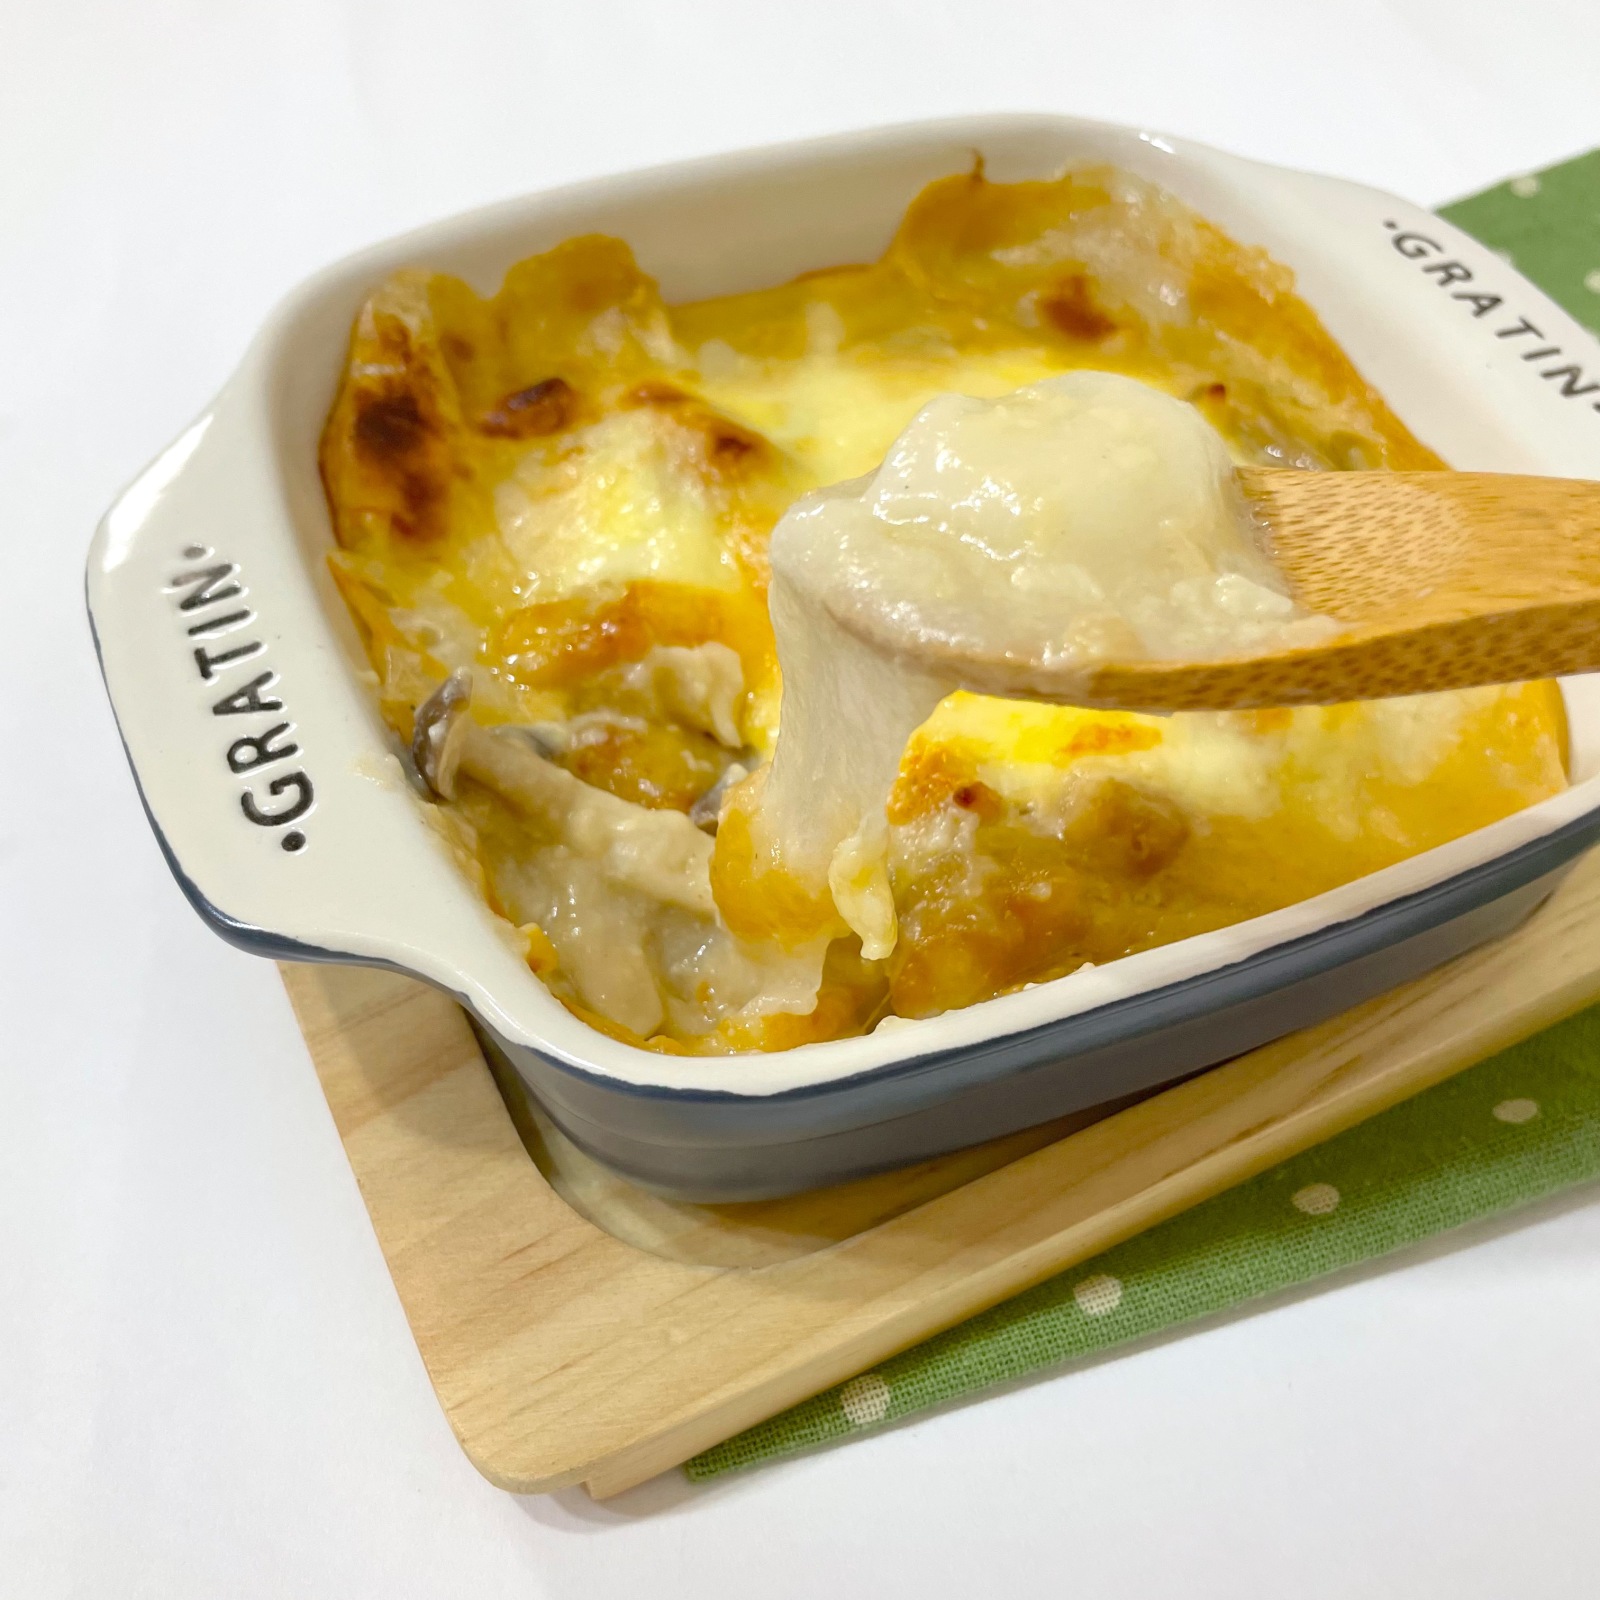 マルサンアイ公式レシピ「もち味噌チーズグラタン」